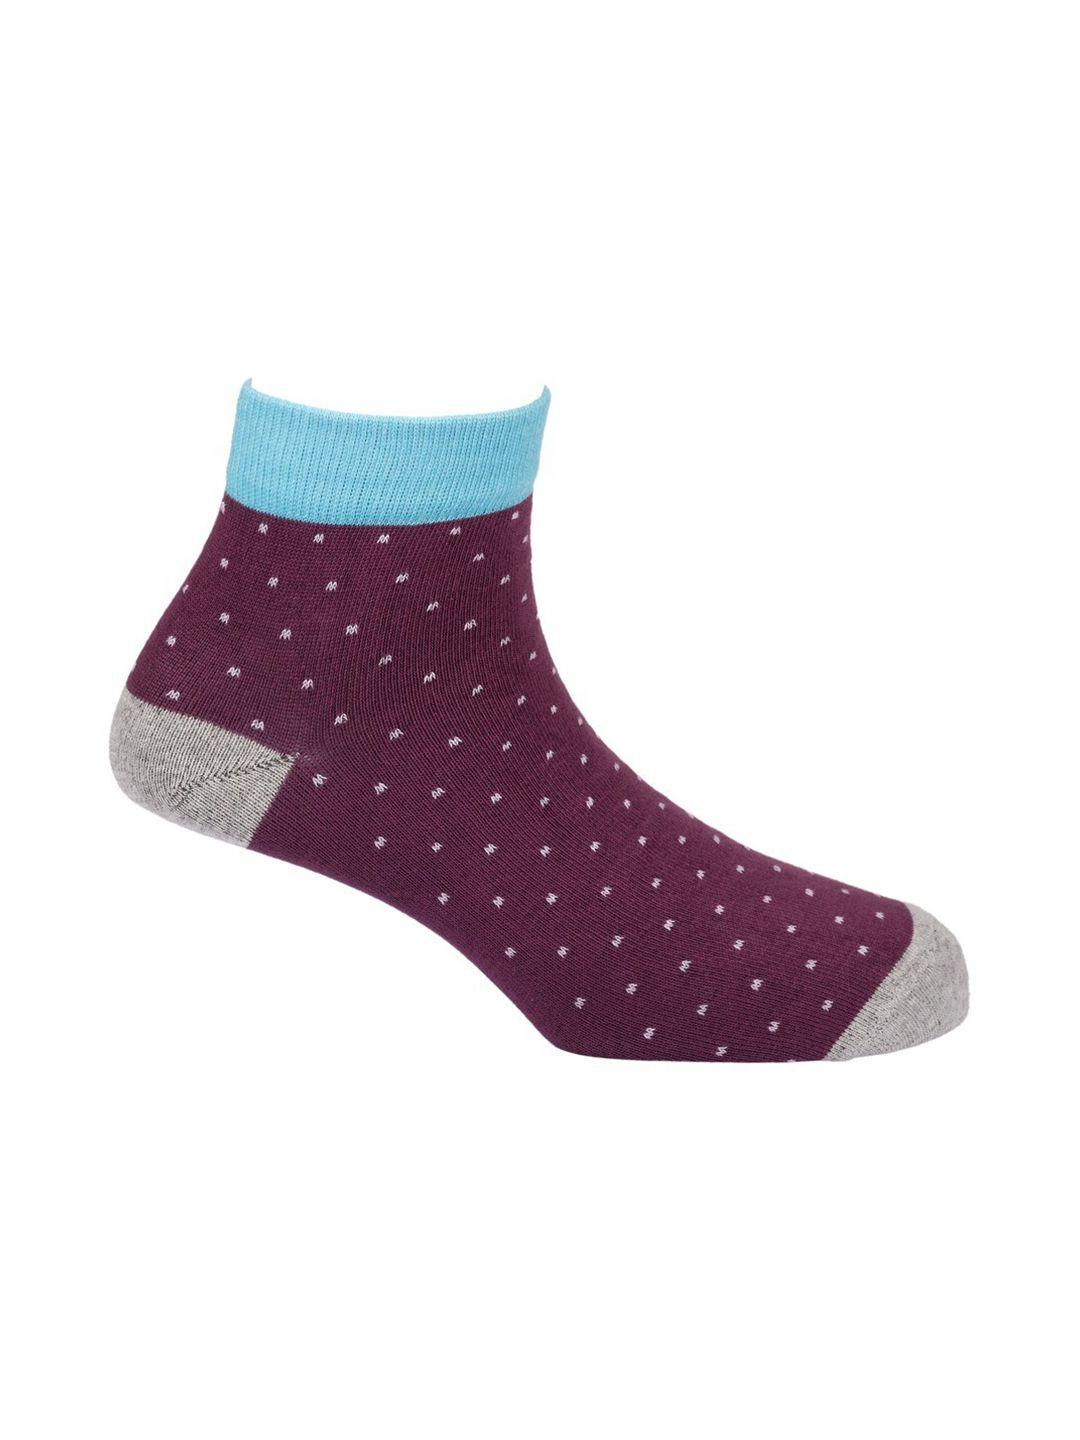 the-tie-hub-men-purple-&-grey-polka-dot-ankle-length-socks